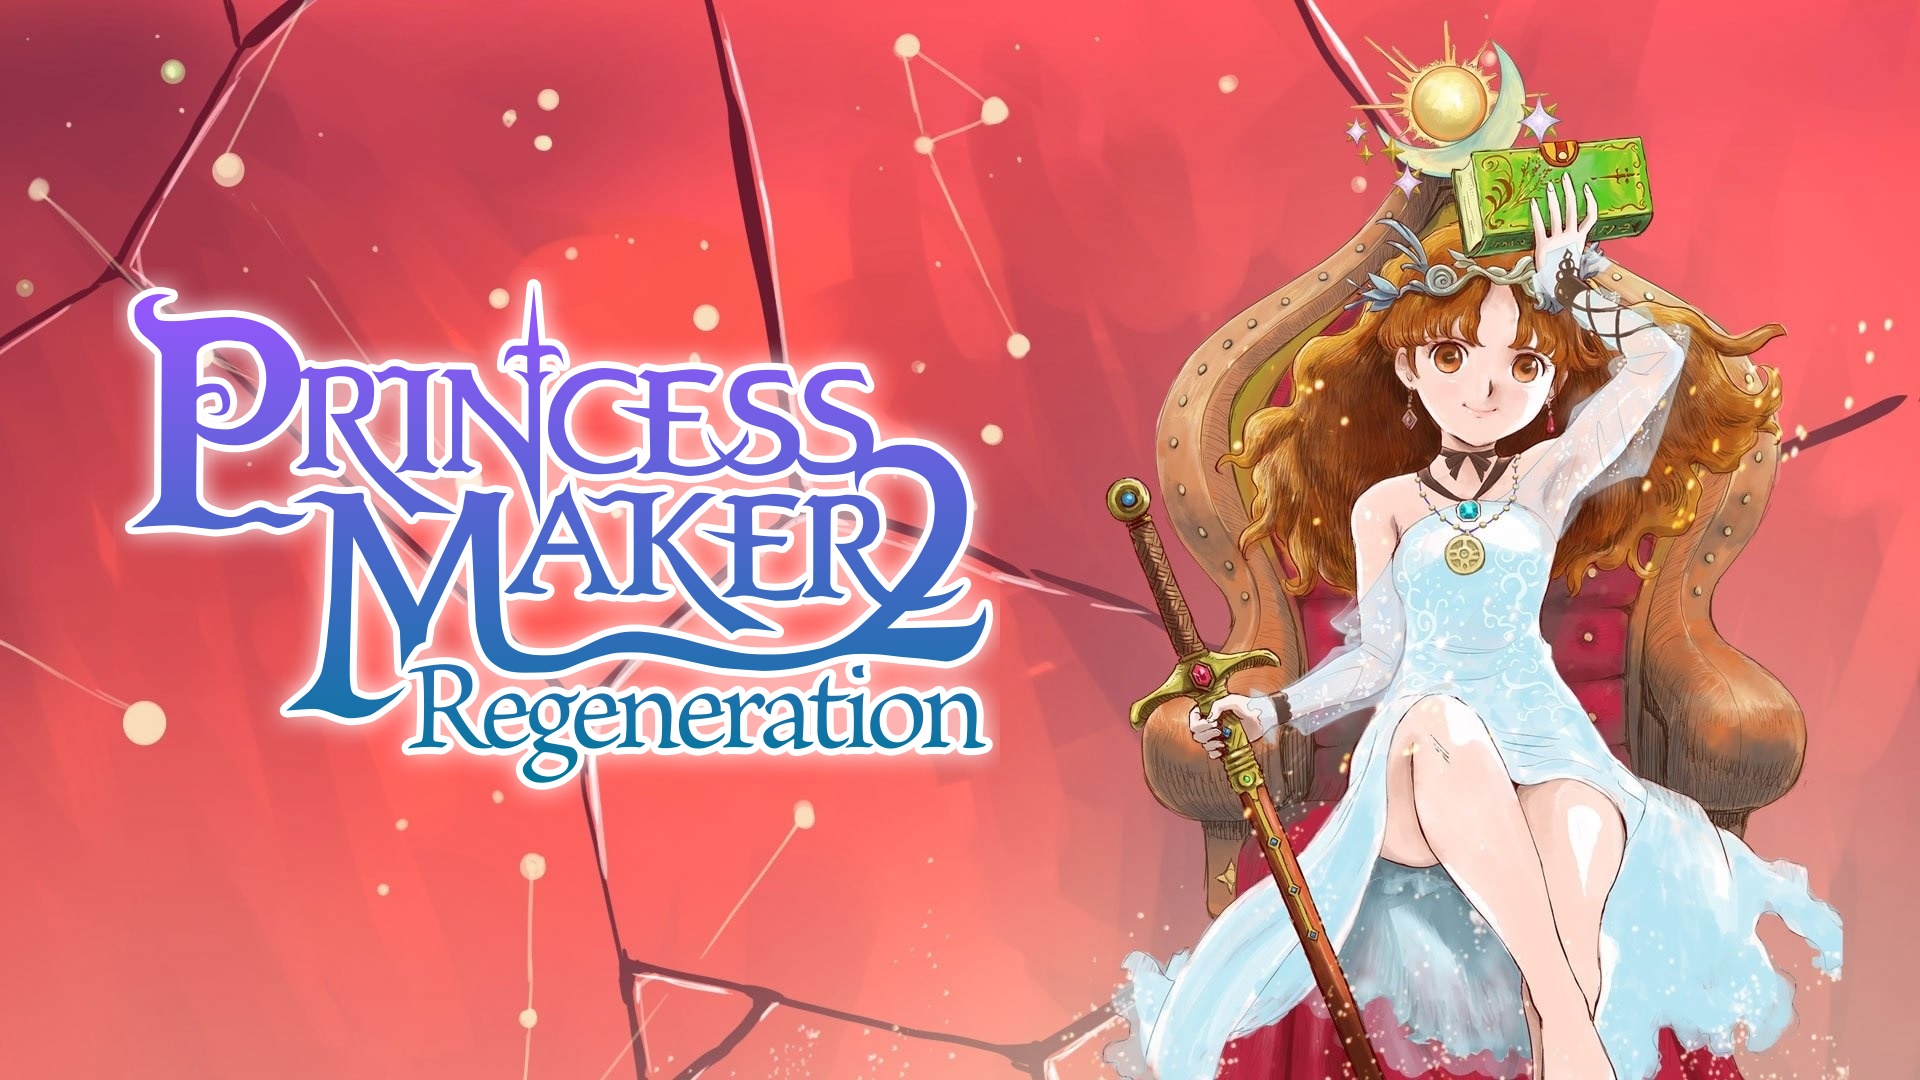 Версии Princess Maker 2 Regeneration для PlayStation отложены из-за изменений контента